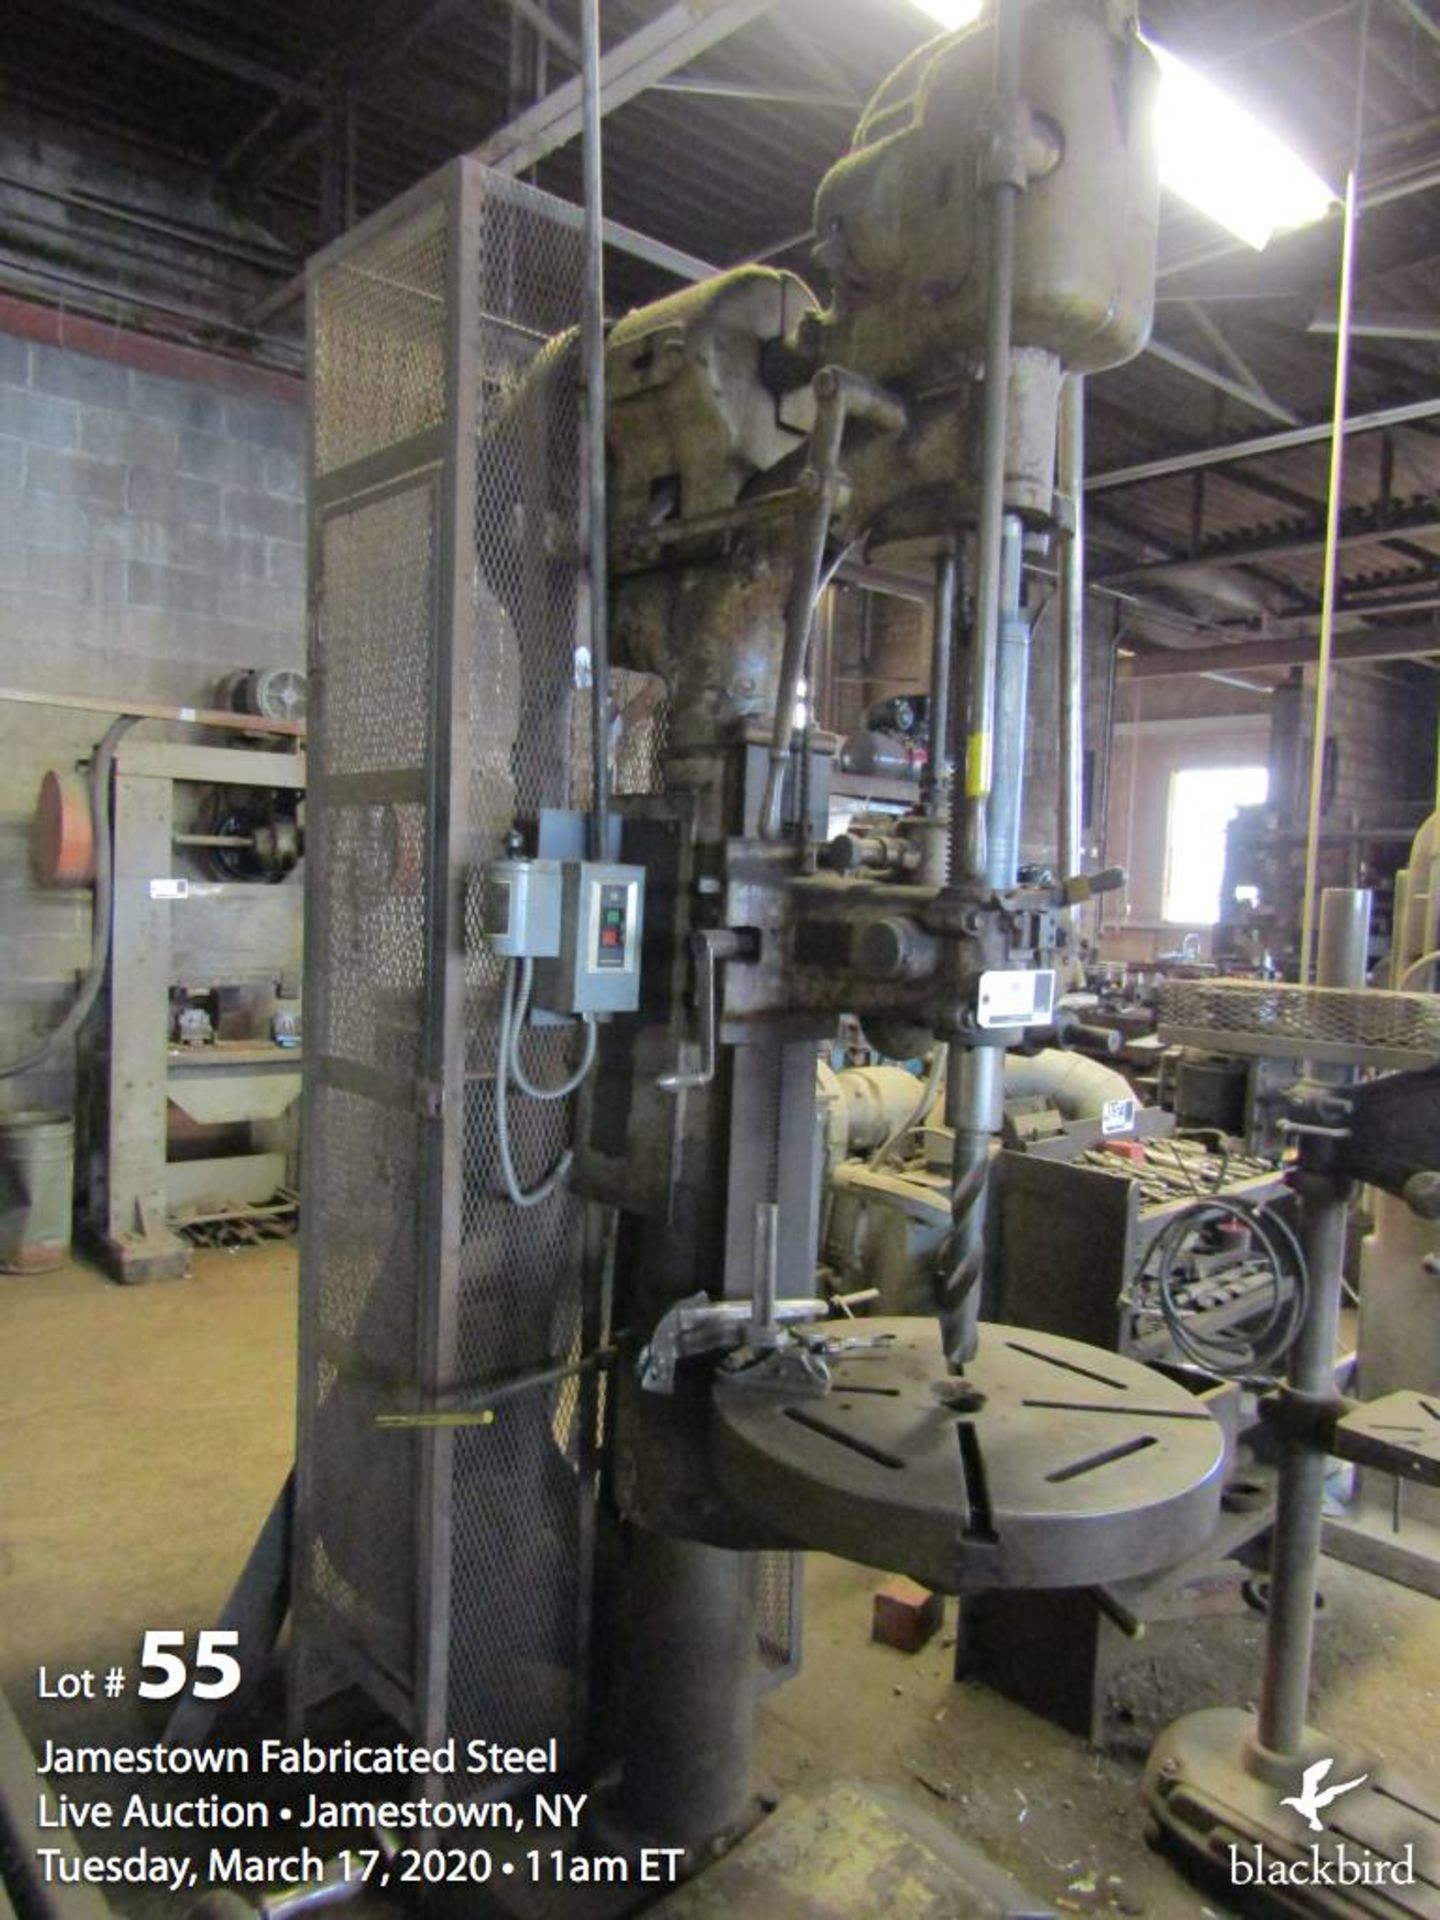 Cincinnati belt driven drill press # 28